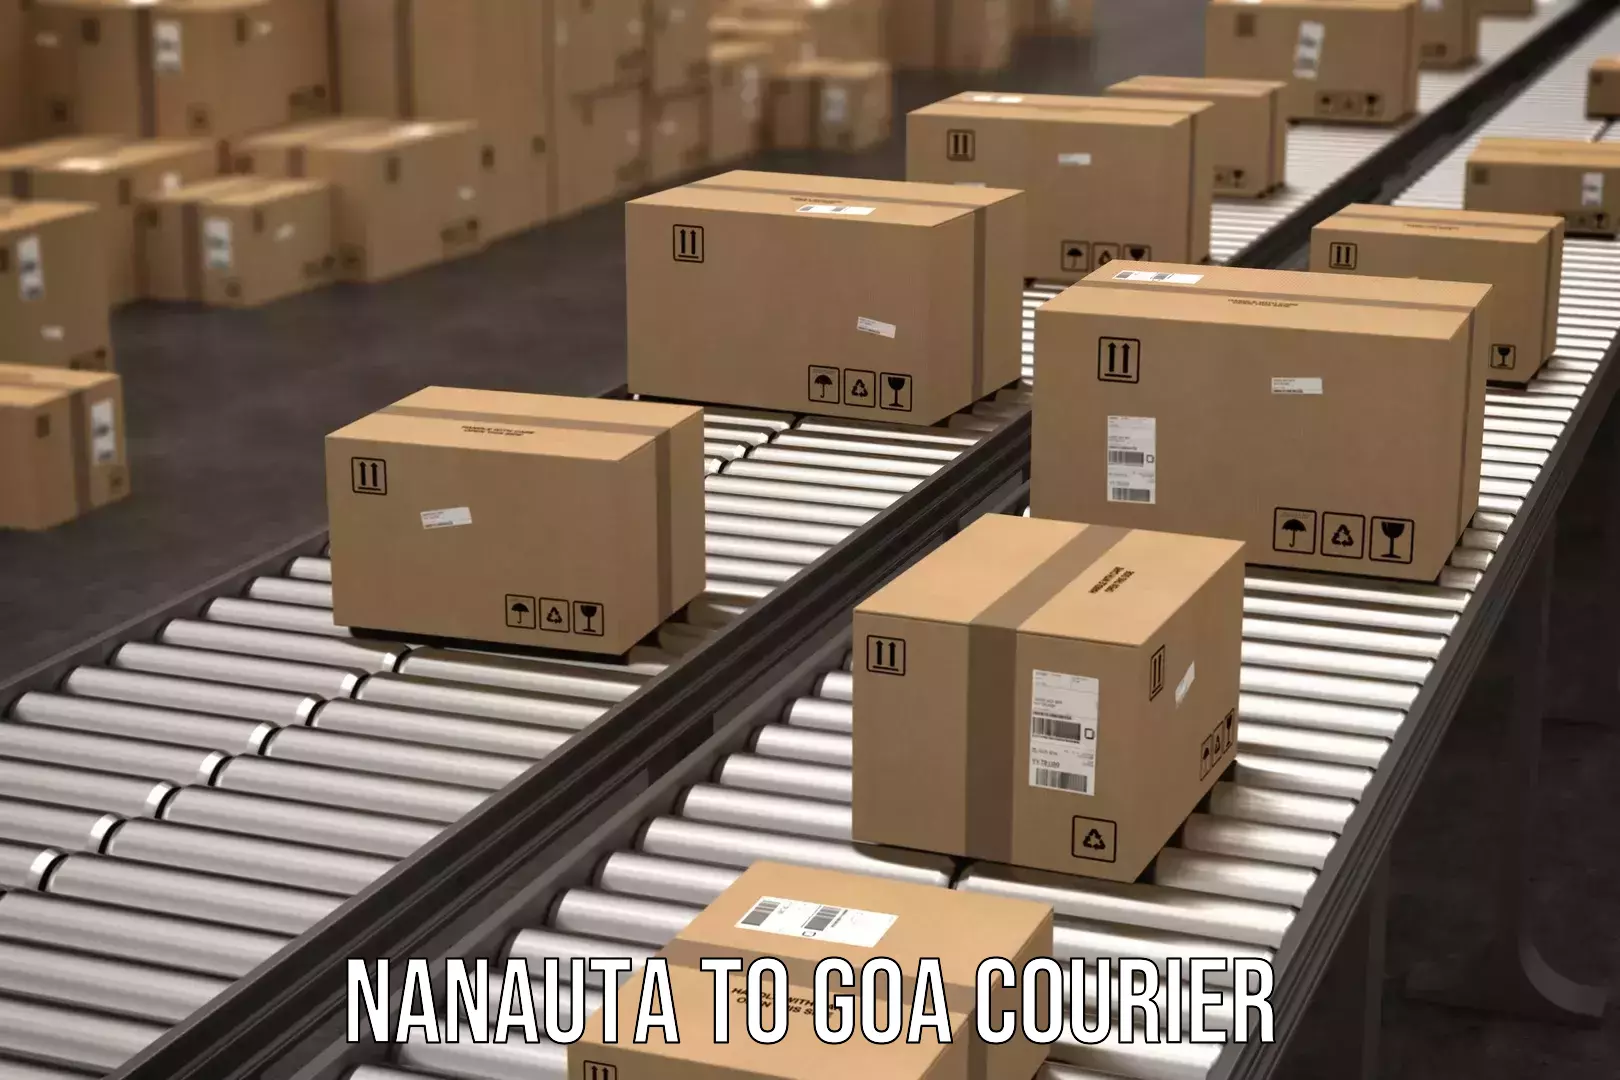 Reliable freight solutions Nanauta to IIT Goa